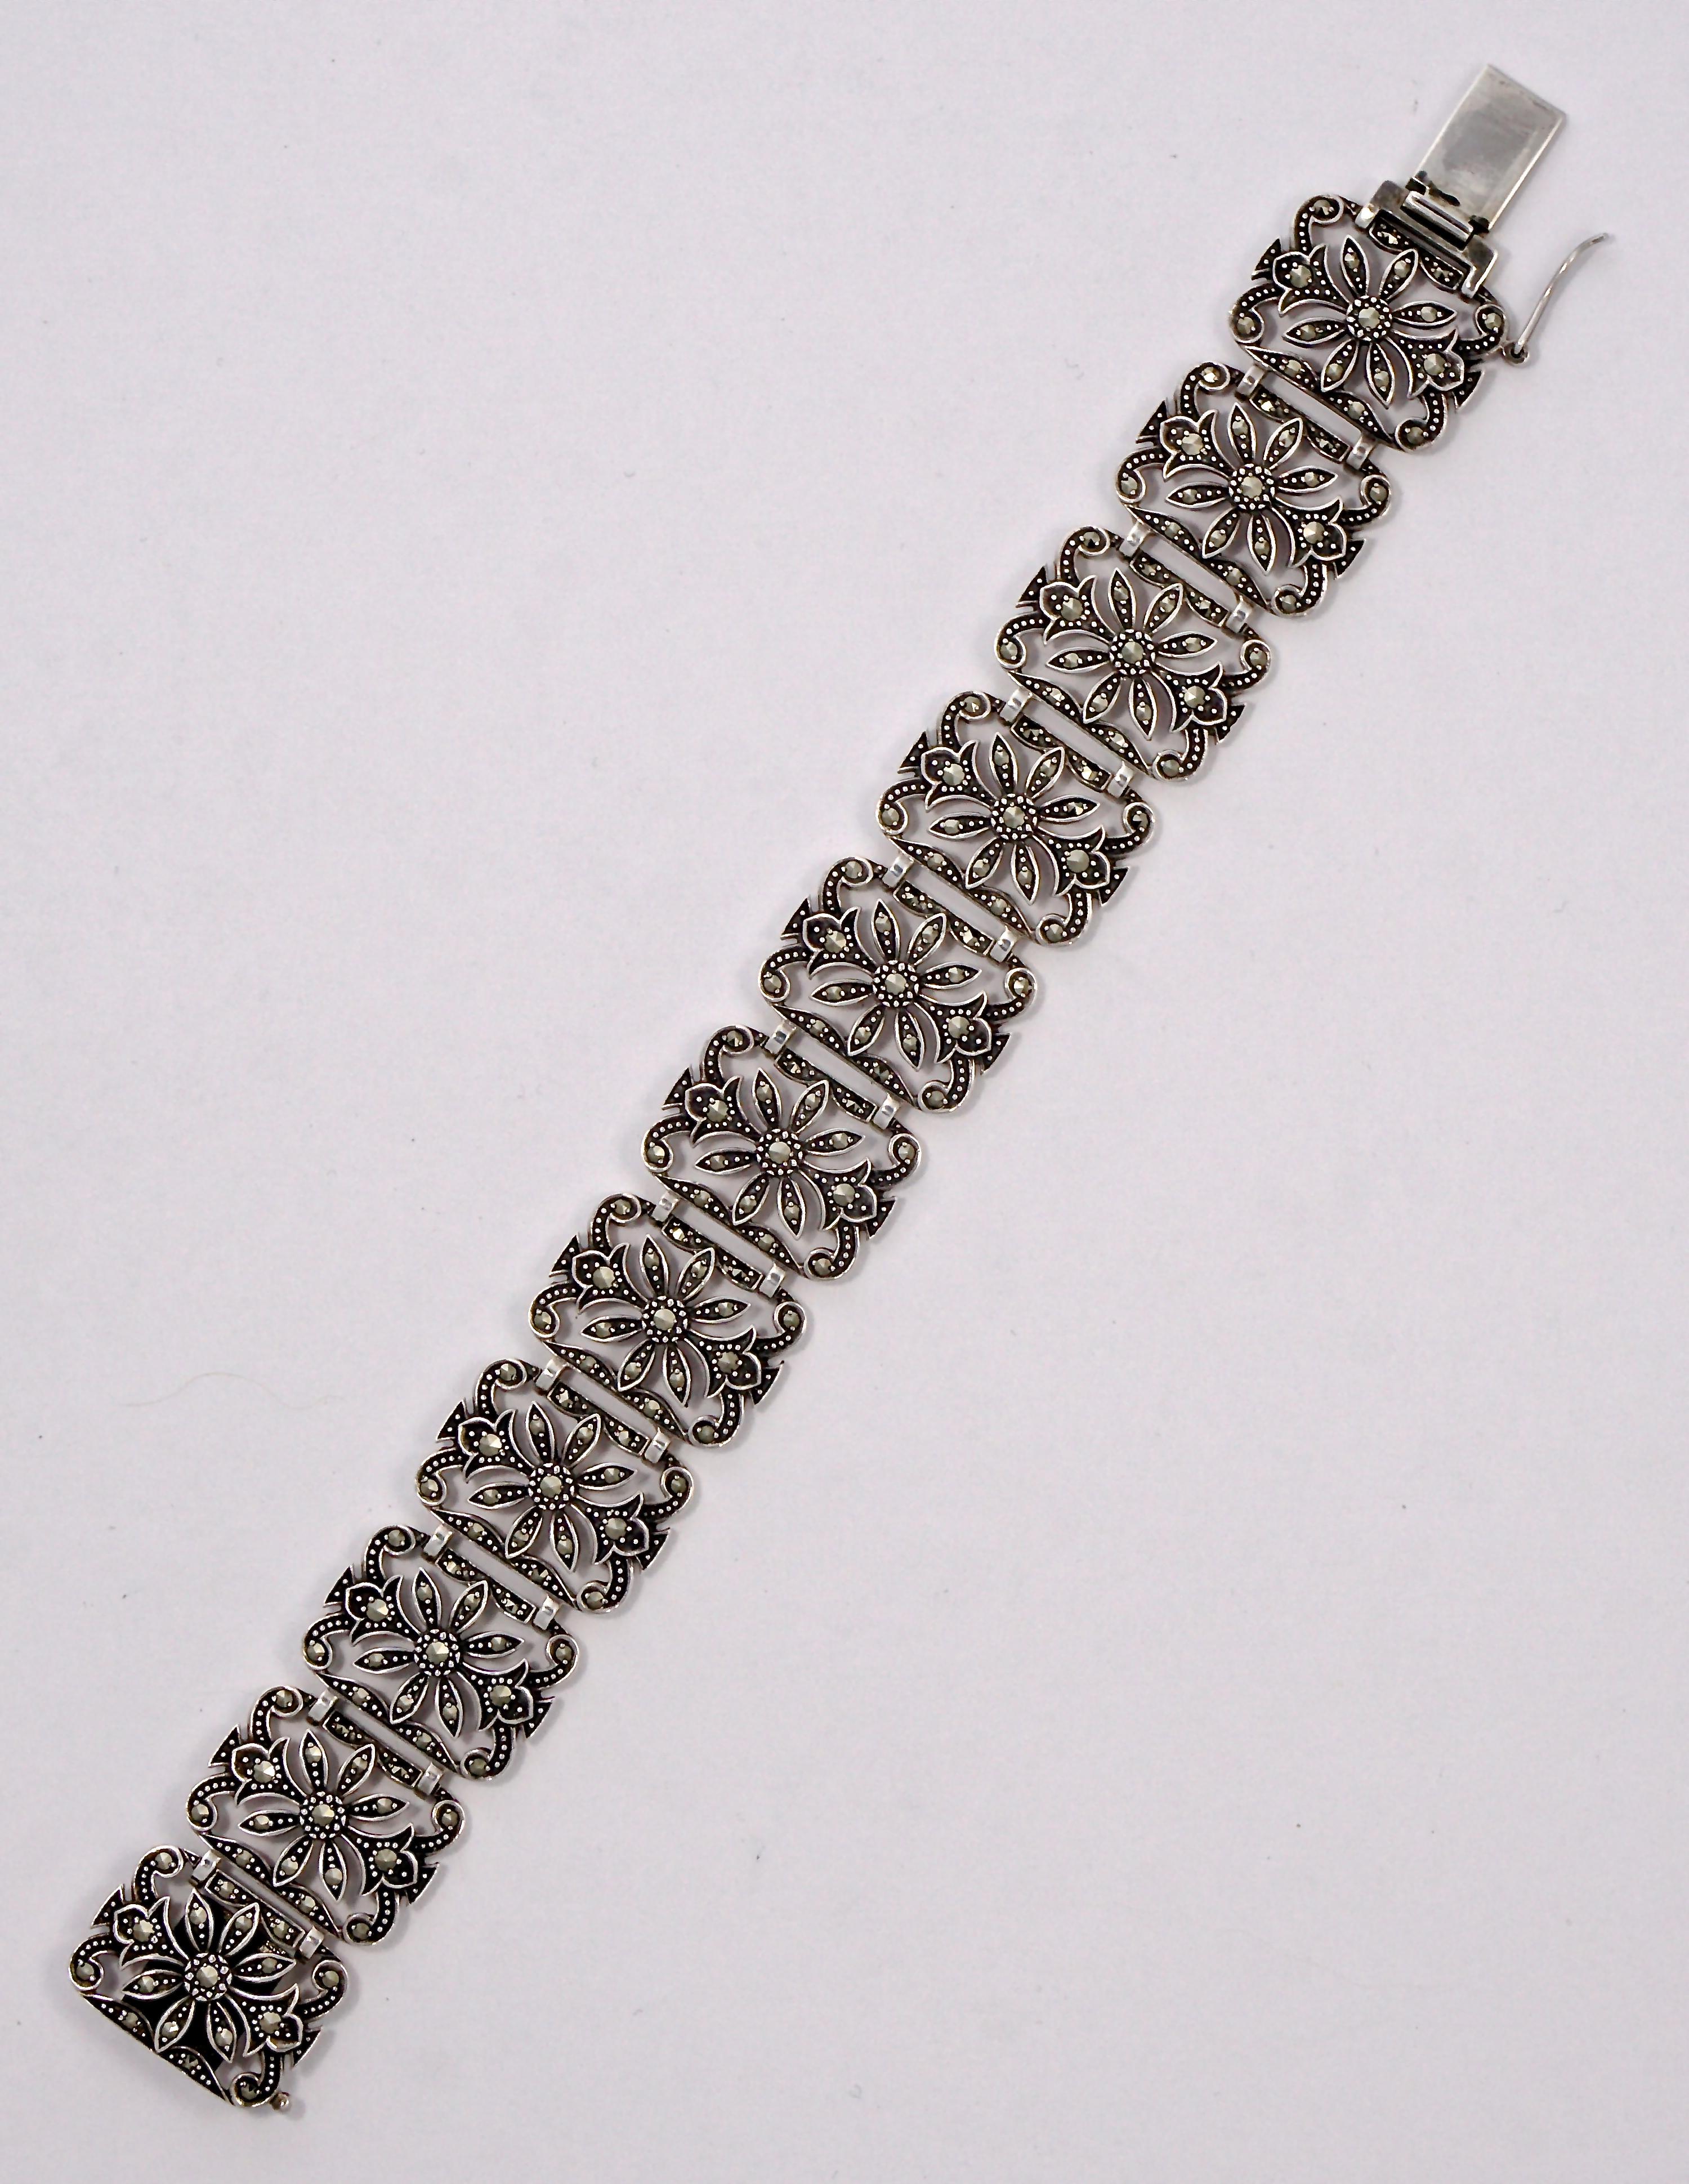 Gliederarmband aus Sterlingsilber, verziert mit Markasiten. Länge 19,1 cm / 7,5 Zoll und Breite 2,1 cm / .82 Zoll,  und wiegt 40,3 Gramm. Das Armband ist mit einem Anker und dem Datumsbuchstaben g gestempelt, die Herstellermarke ist DK. Das